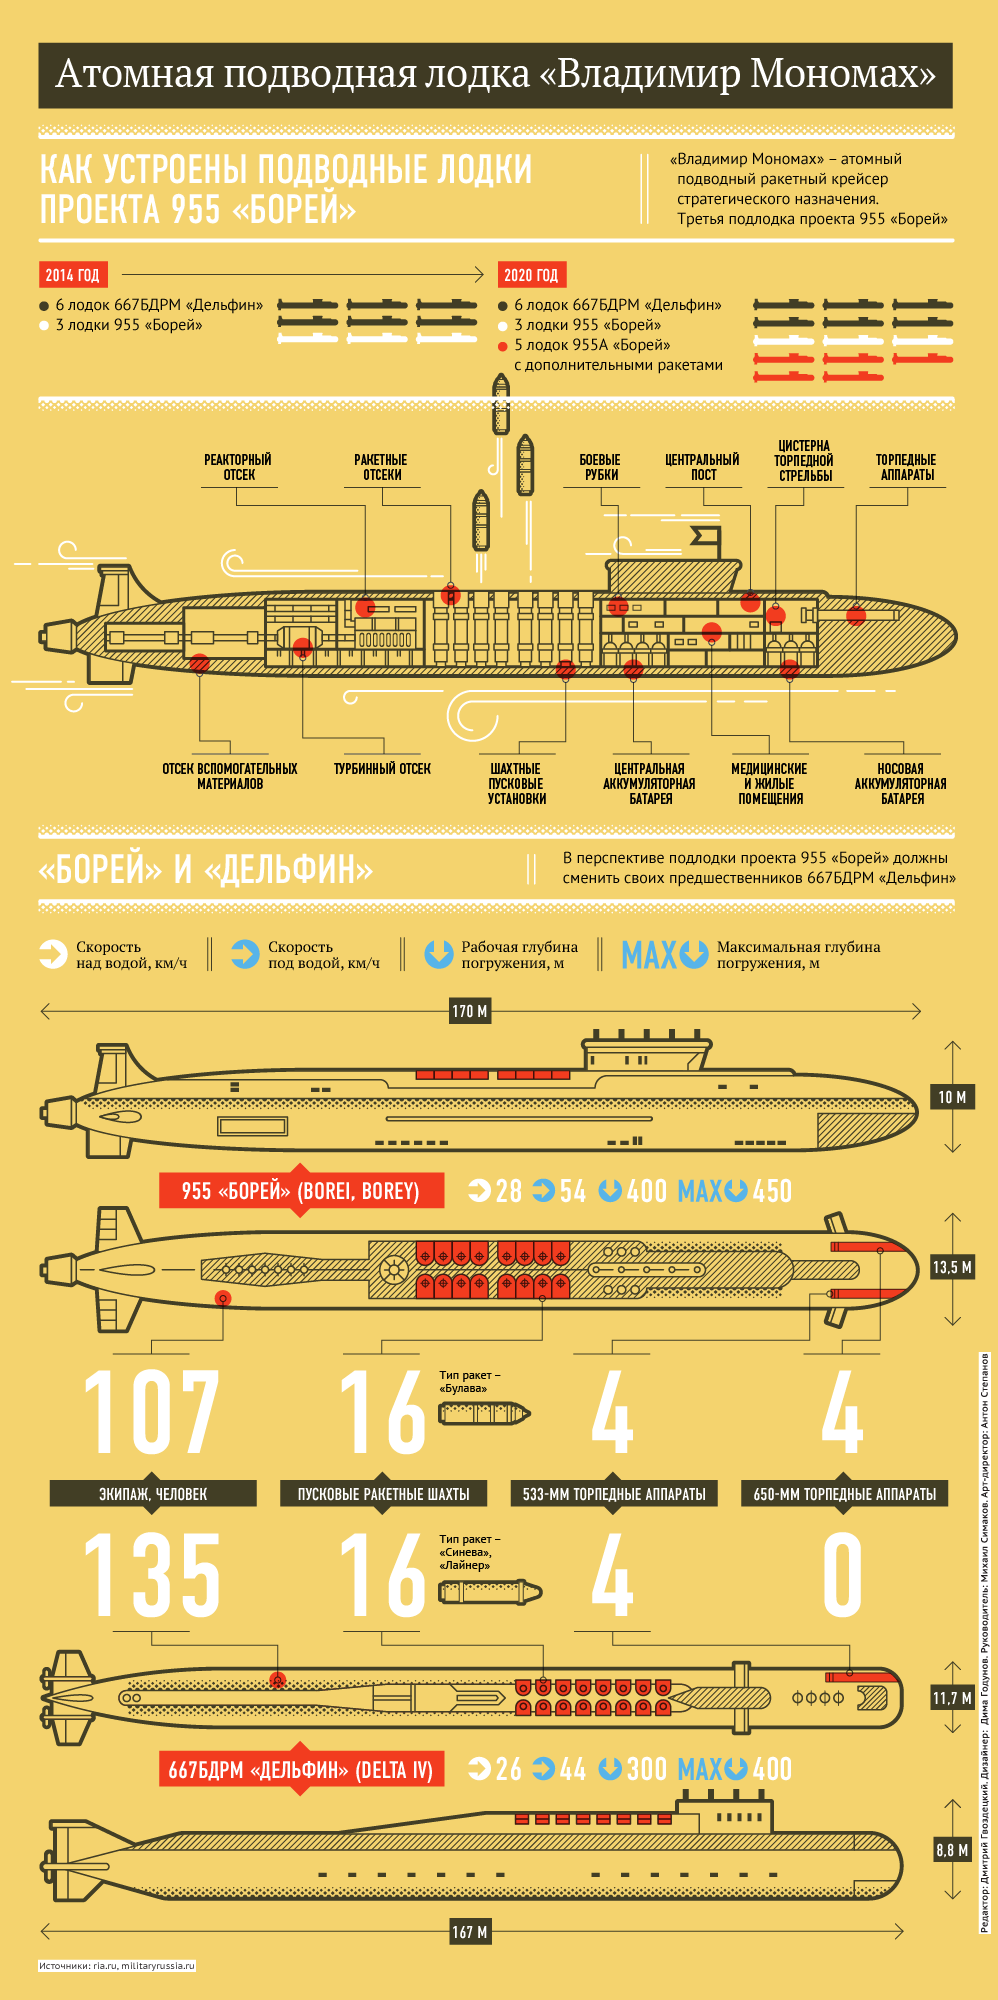 Атомная подводная лодка Владимир Мономах